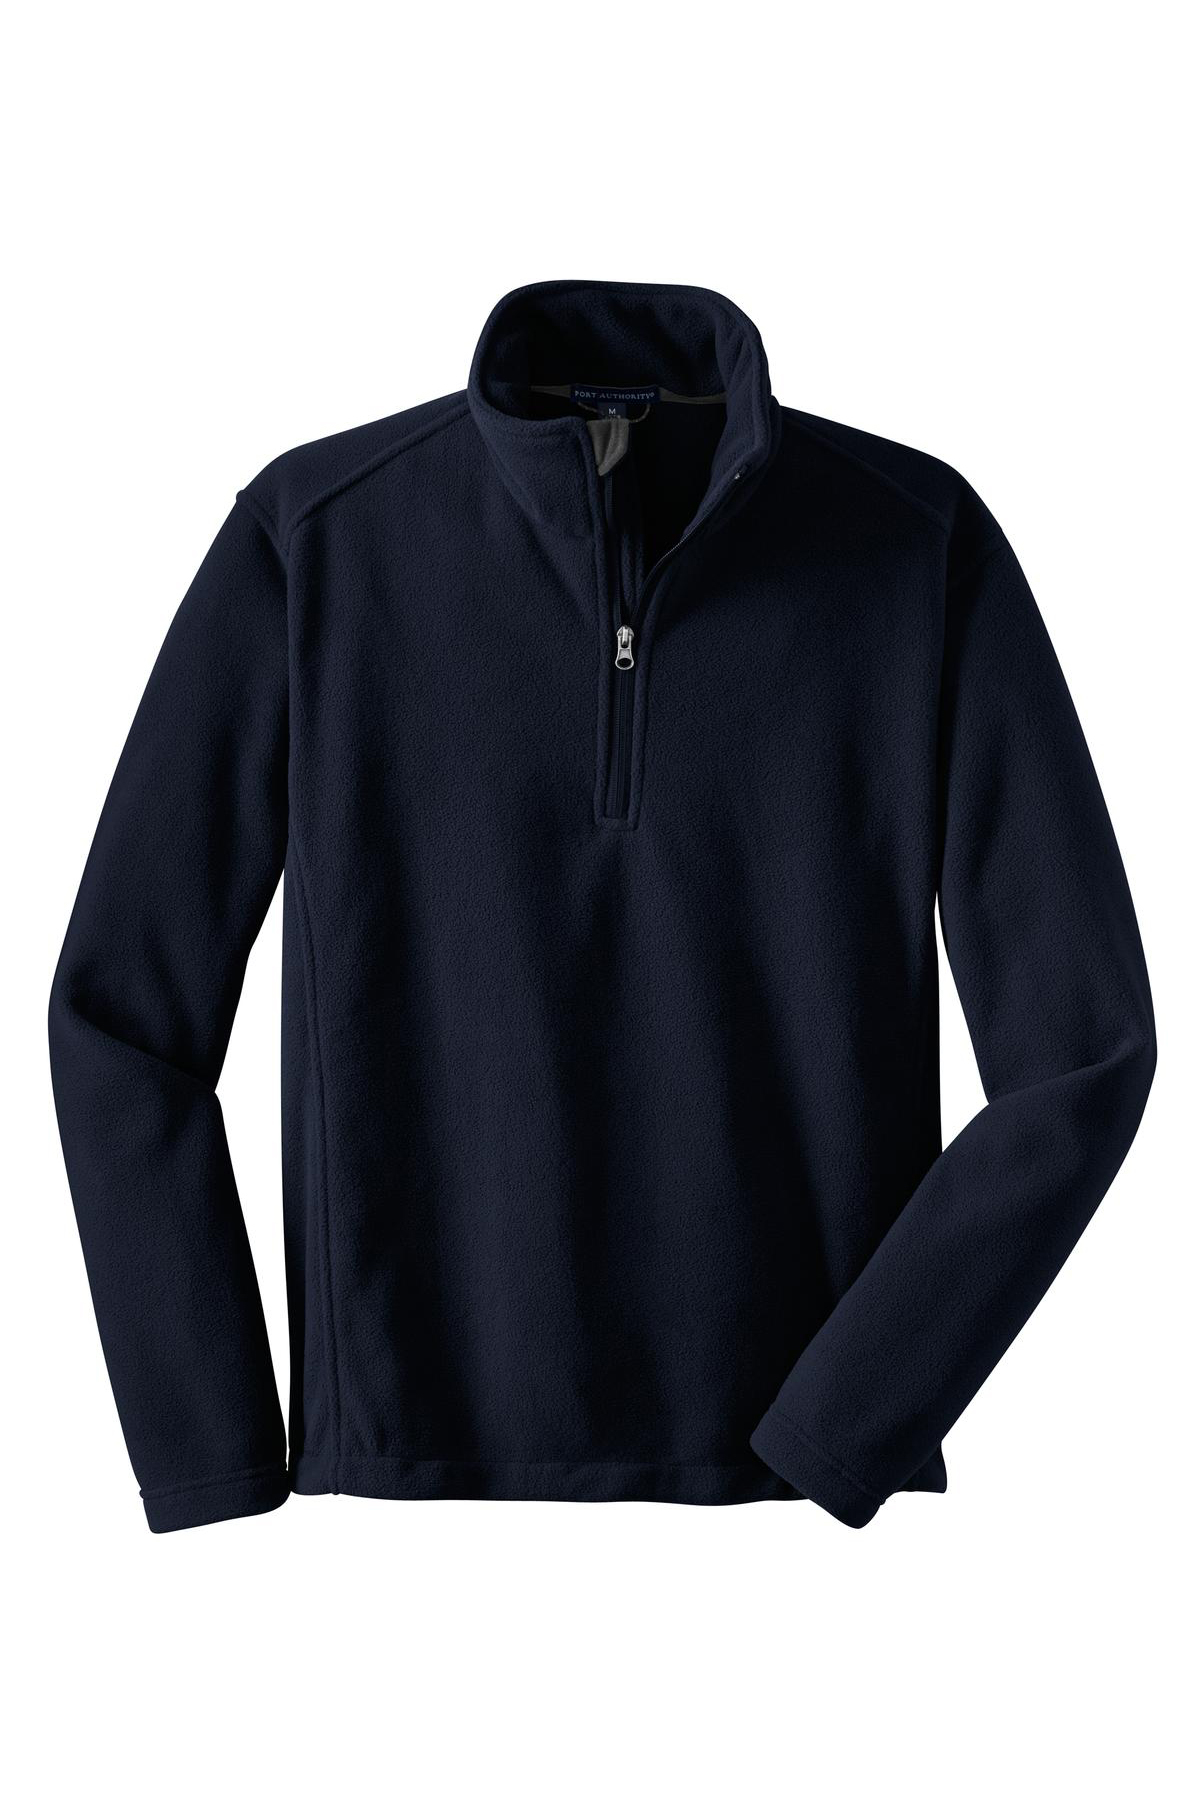 Port Authority Value Fleece 1/4-Zip Pullover | Product | SanMar